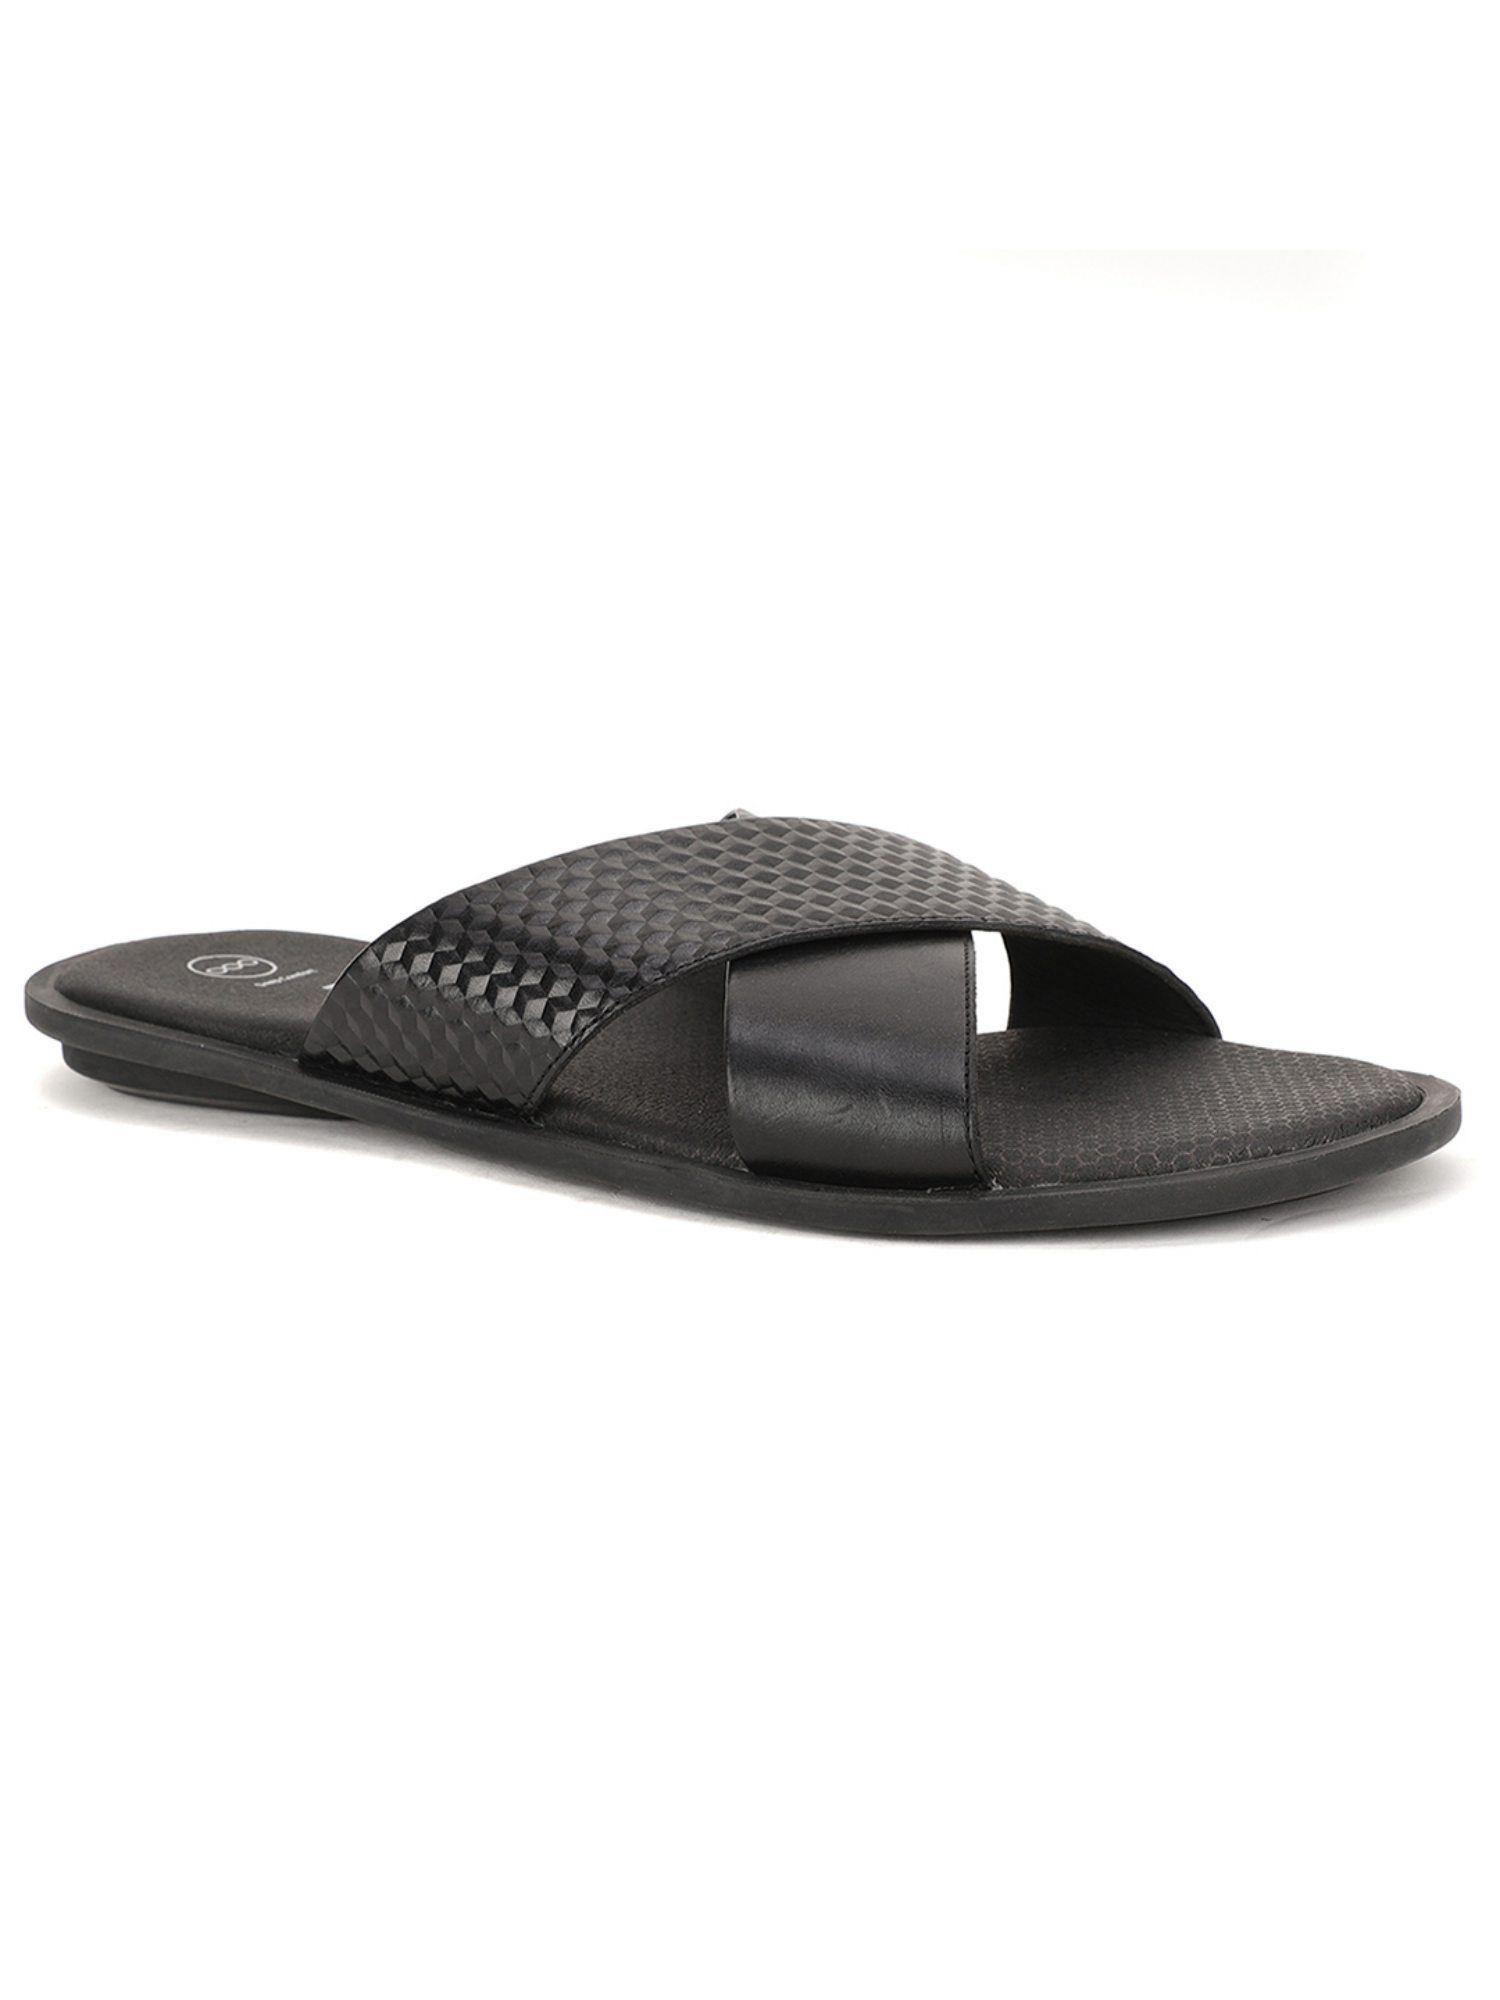 textured-black-sandals